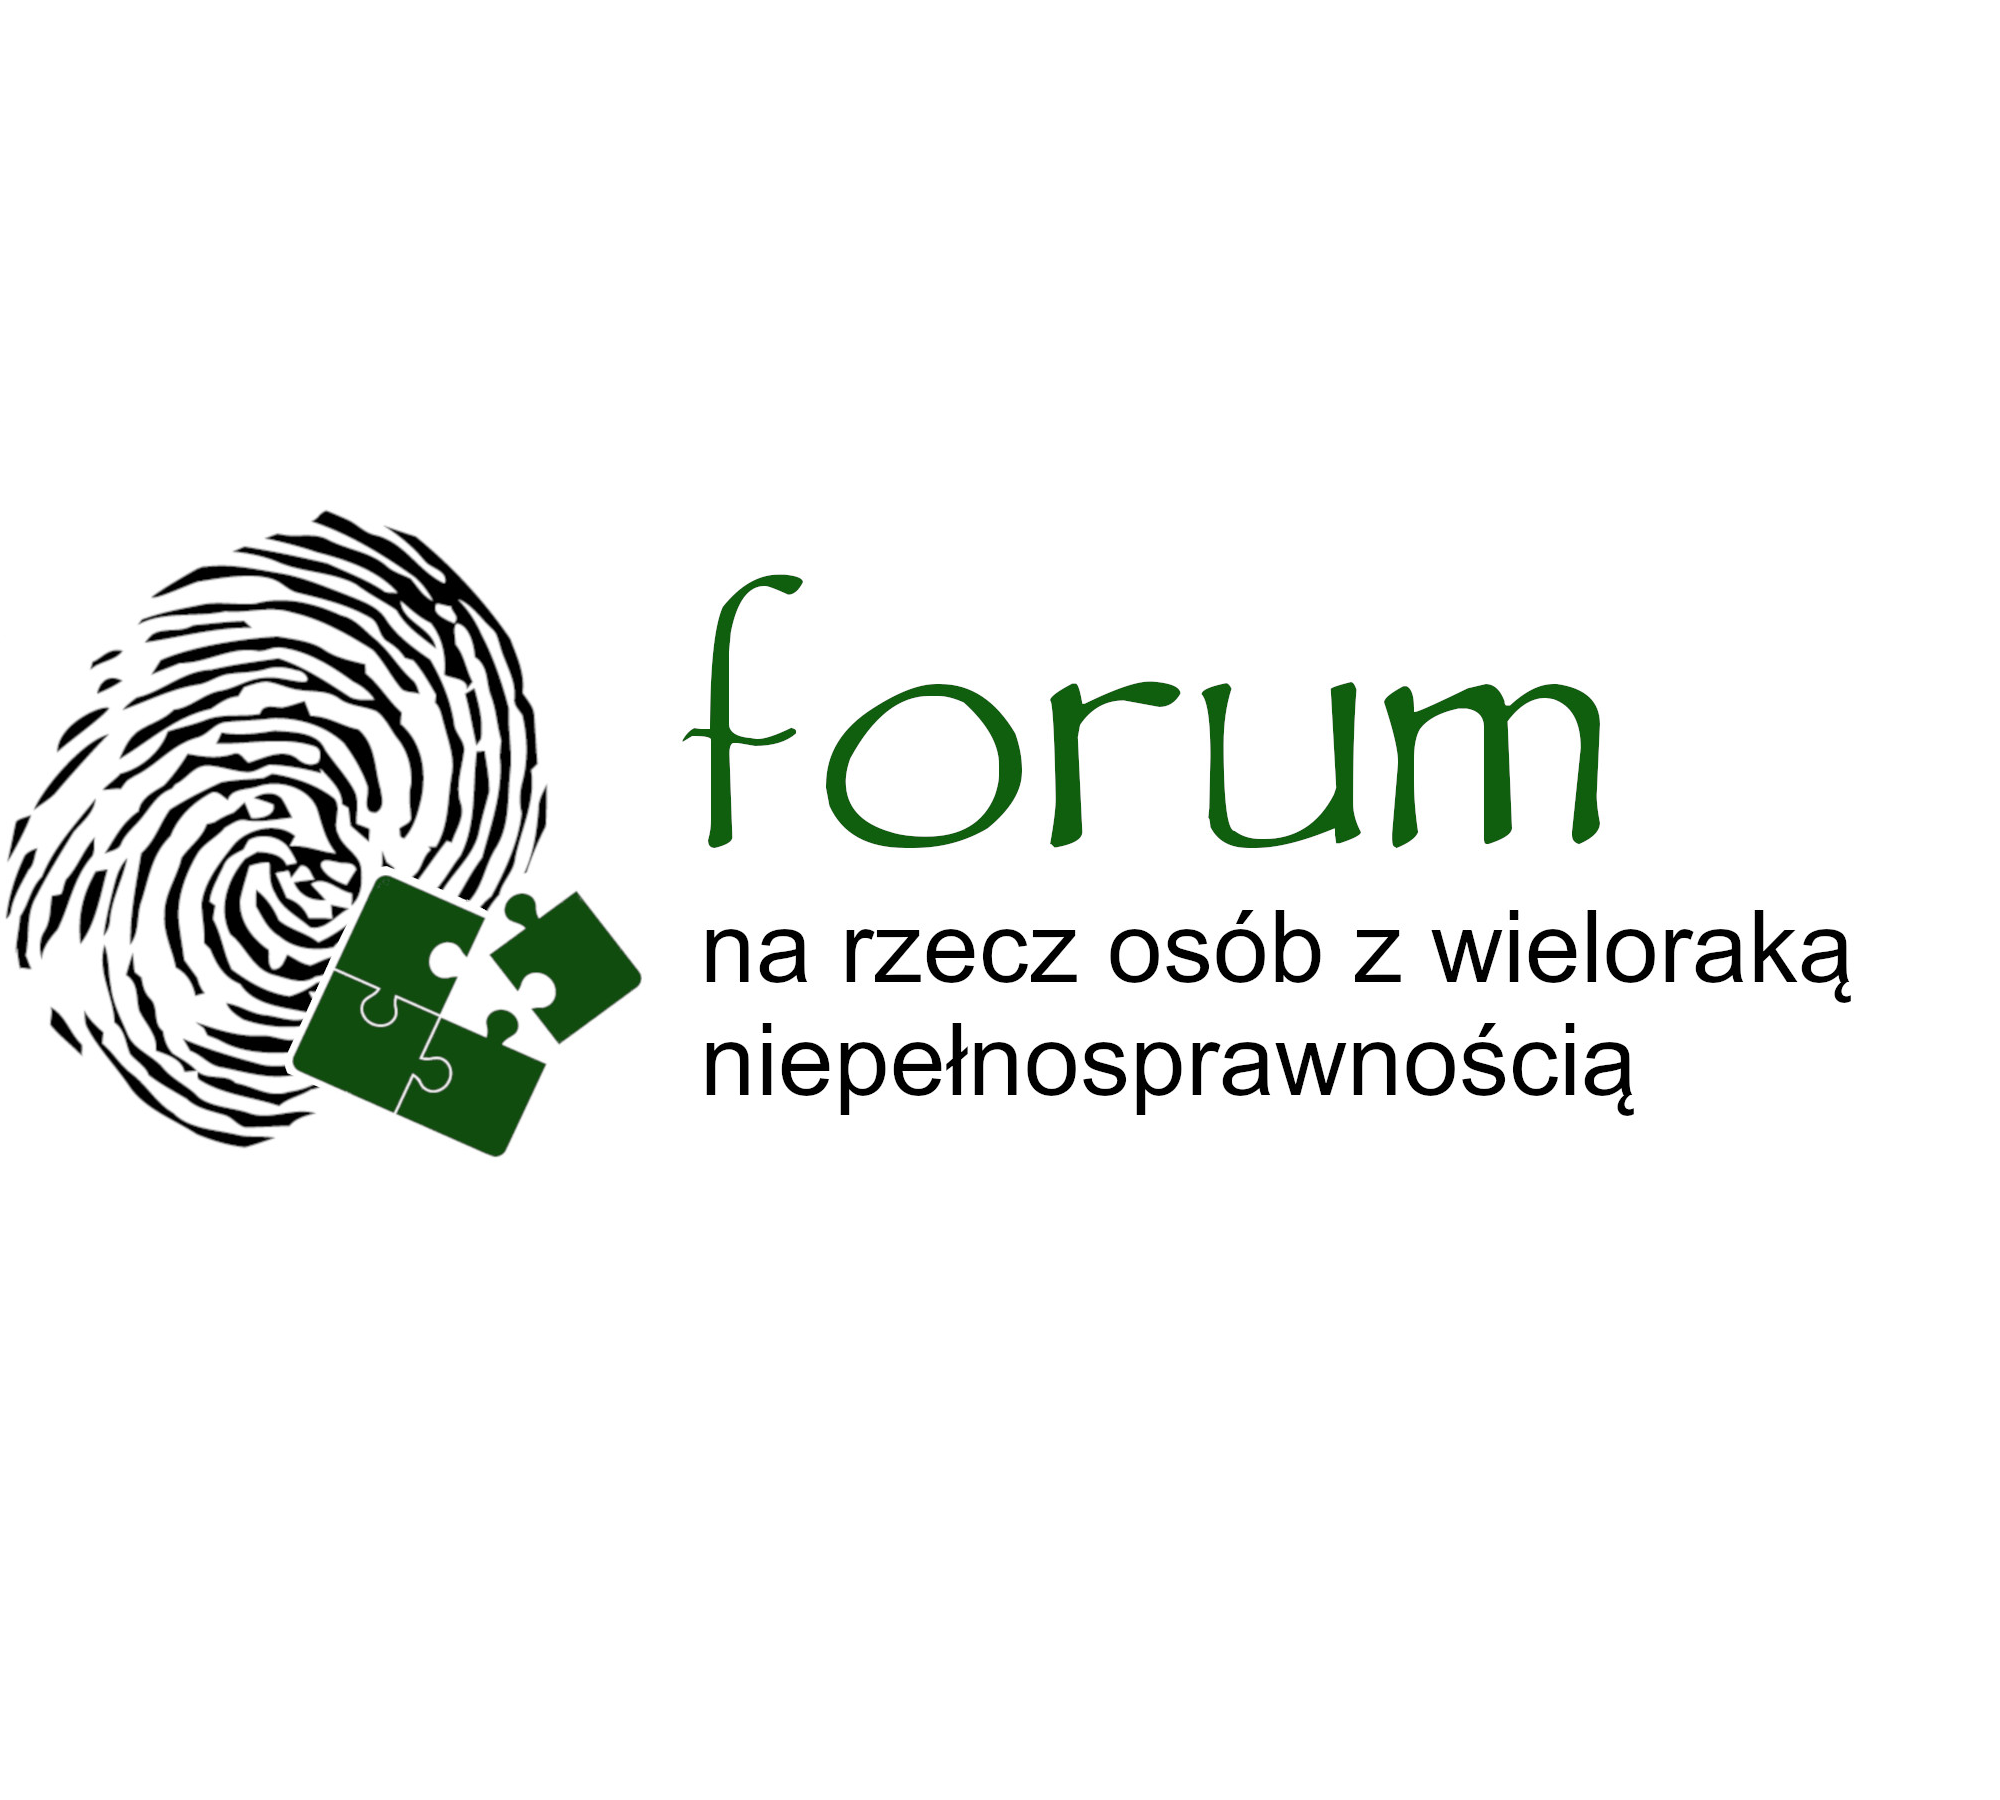 Forum_logo ostateczne_kwadrat.png